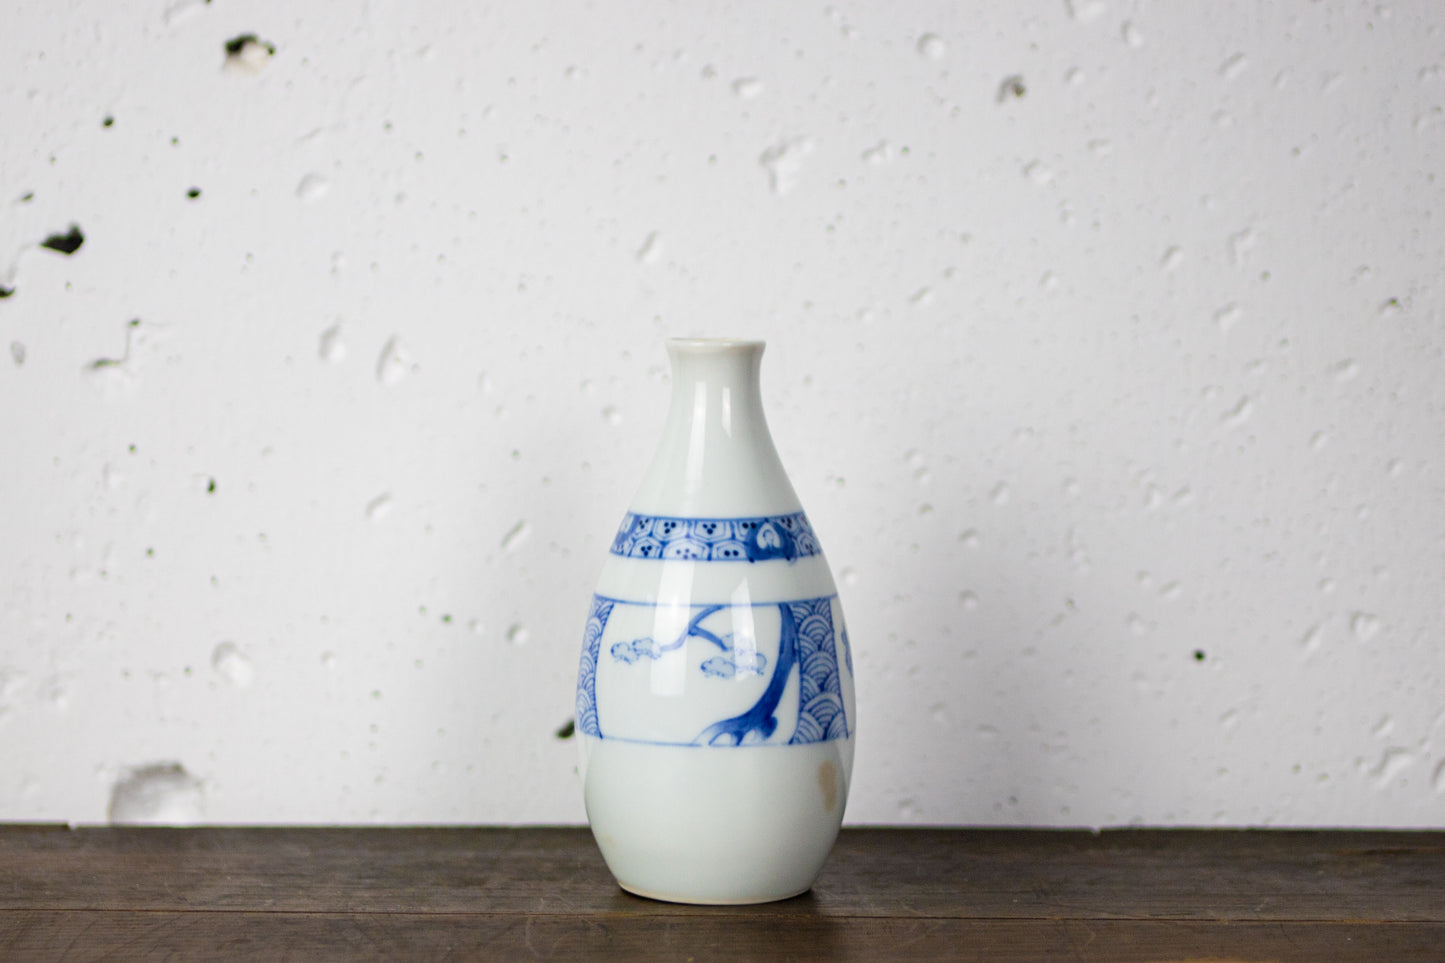 Plum-patterned small sake bottle